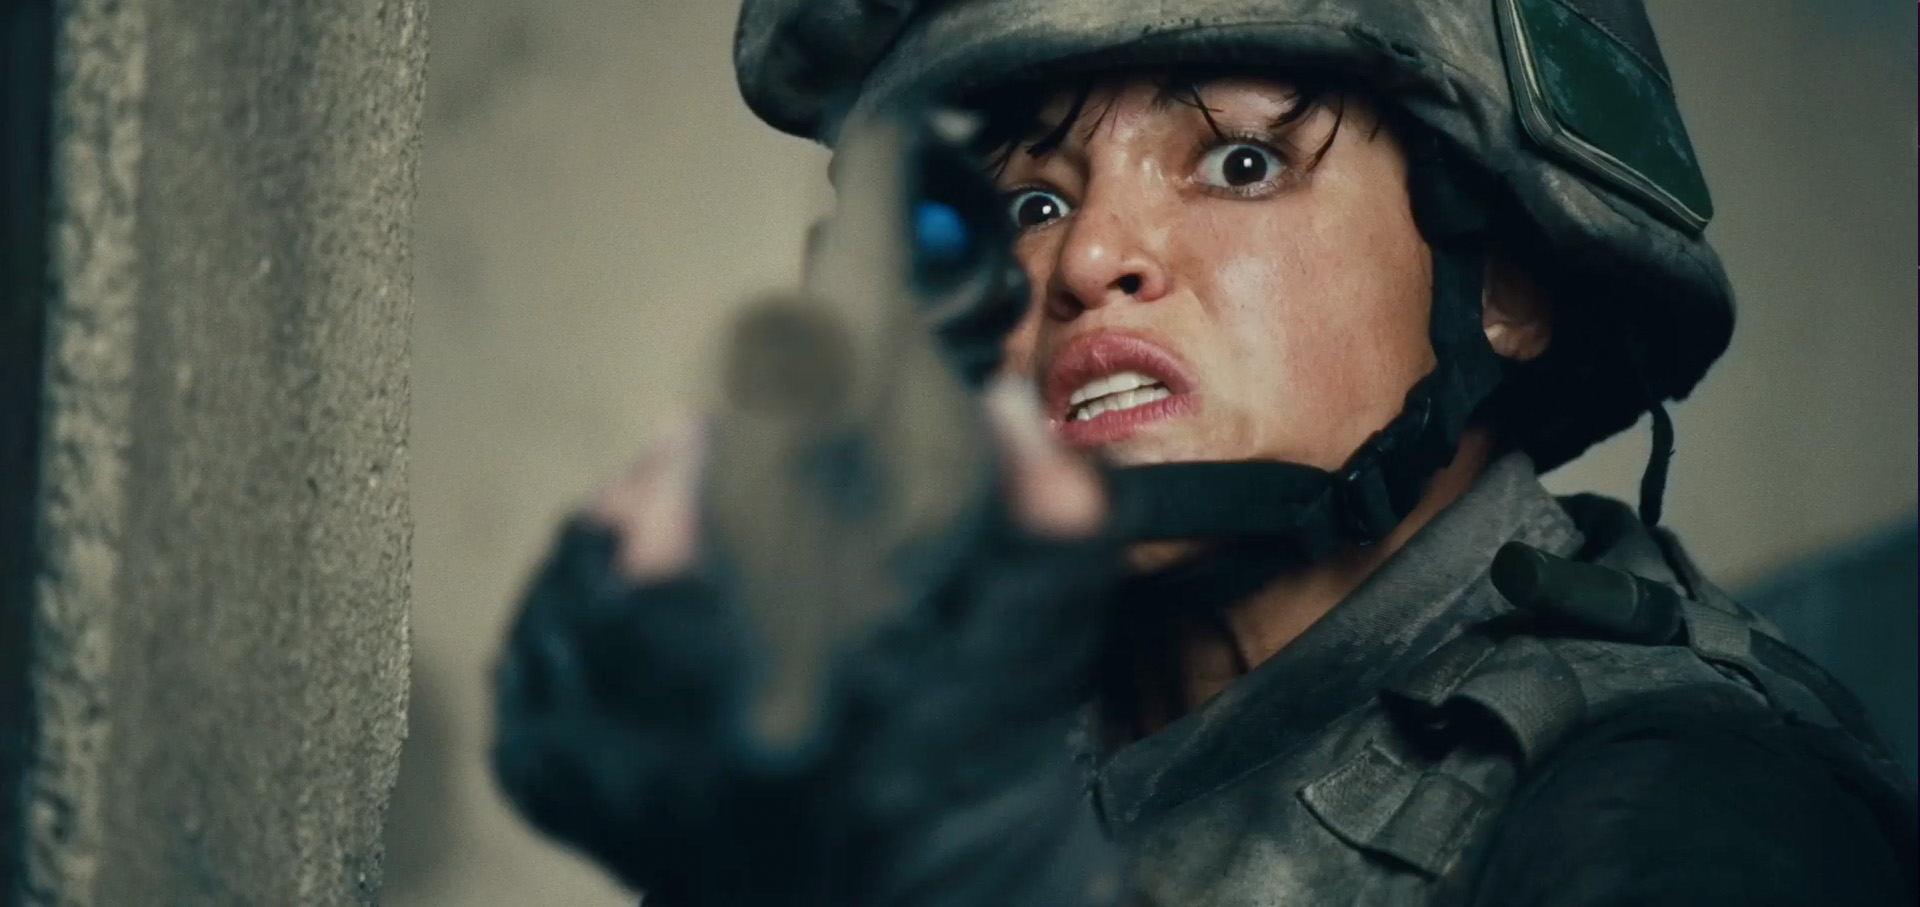 Battle Los Angeles - Trailer Caps - Michelle Rodriguez Image (27015470) -  Fanpop - Page 6